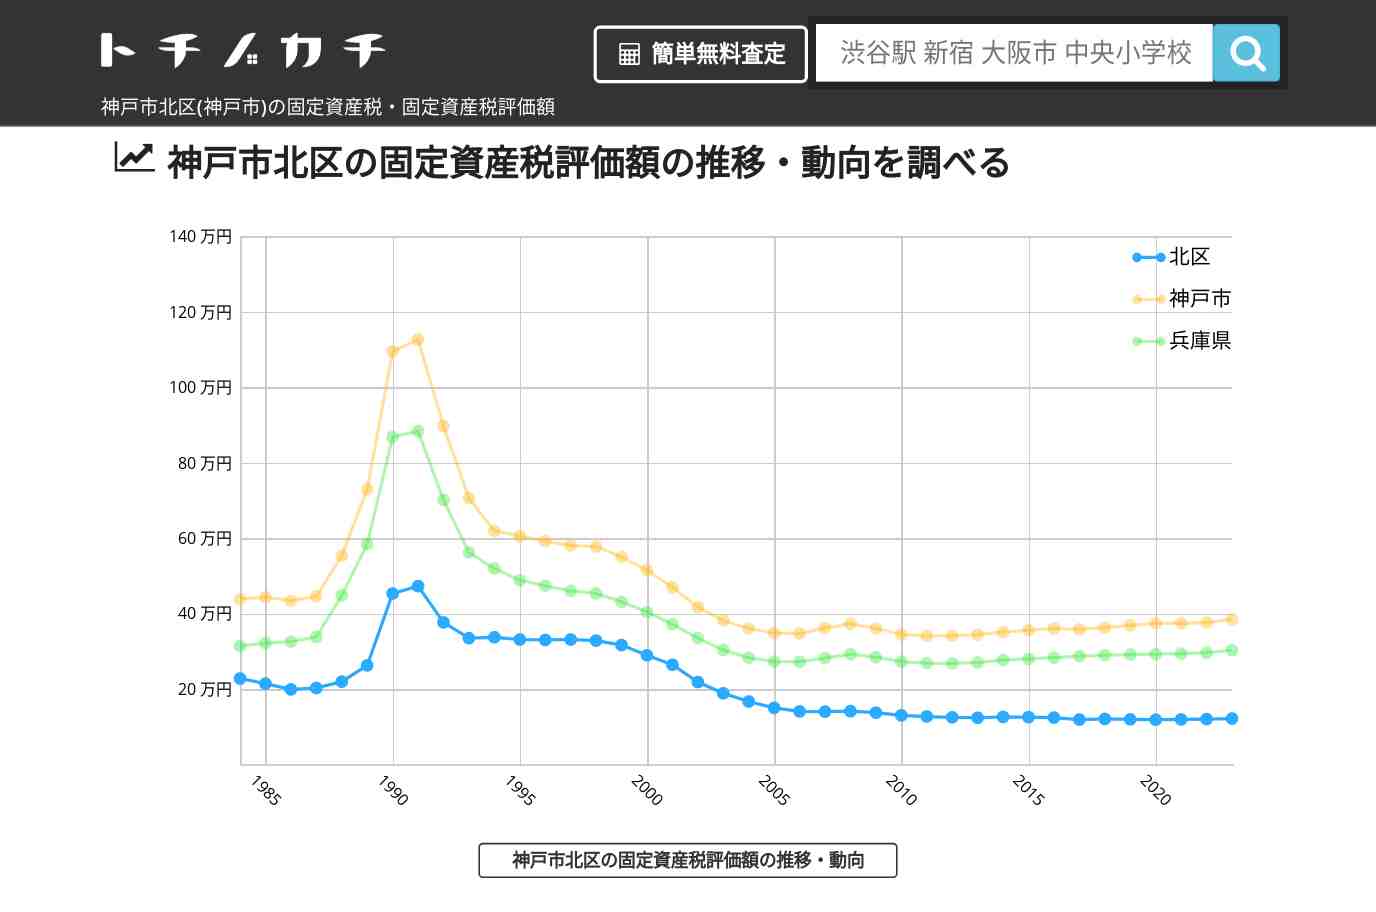 西山小学校(兵庫県 神戸市 北区)周辺の固定資産税・固定資産税評価額 | トチノカチ